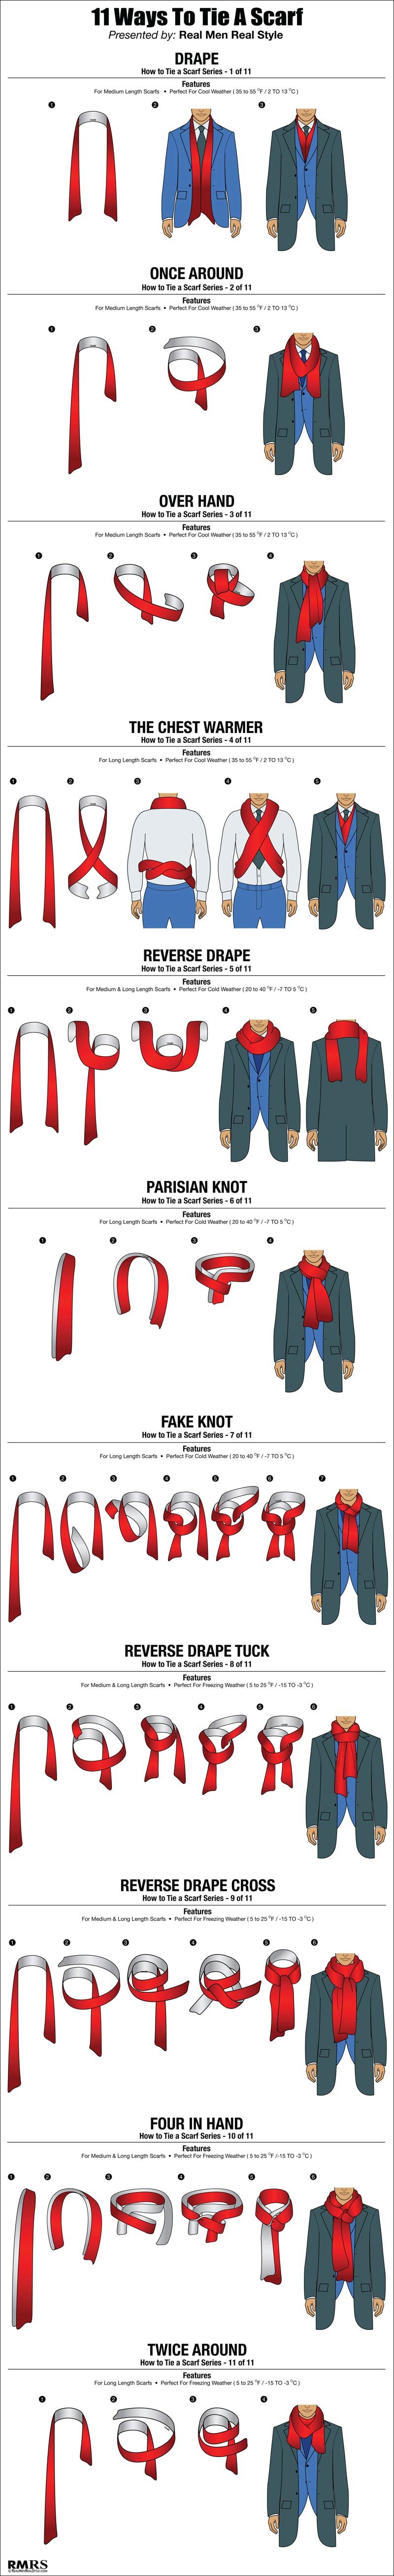 ways to tie a scarf